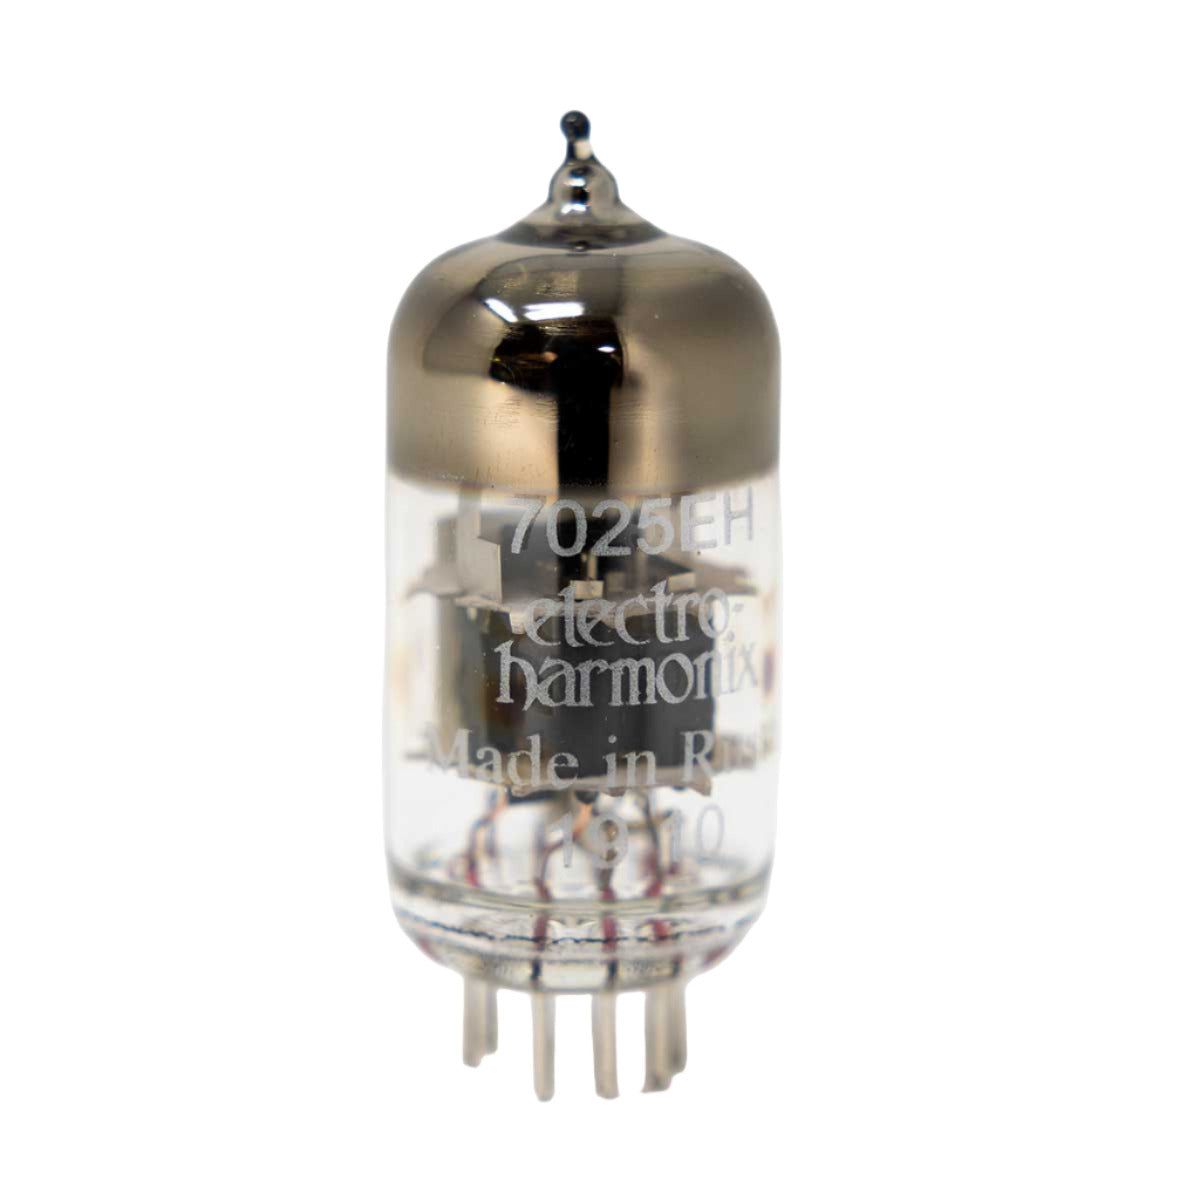 12AX7 / 7025 Electro Harmonix Preamp Vacuum Tube